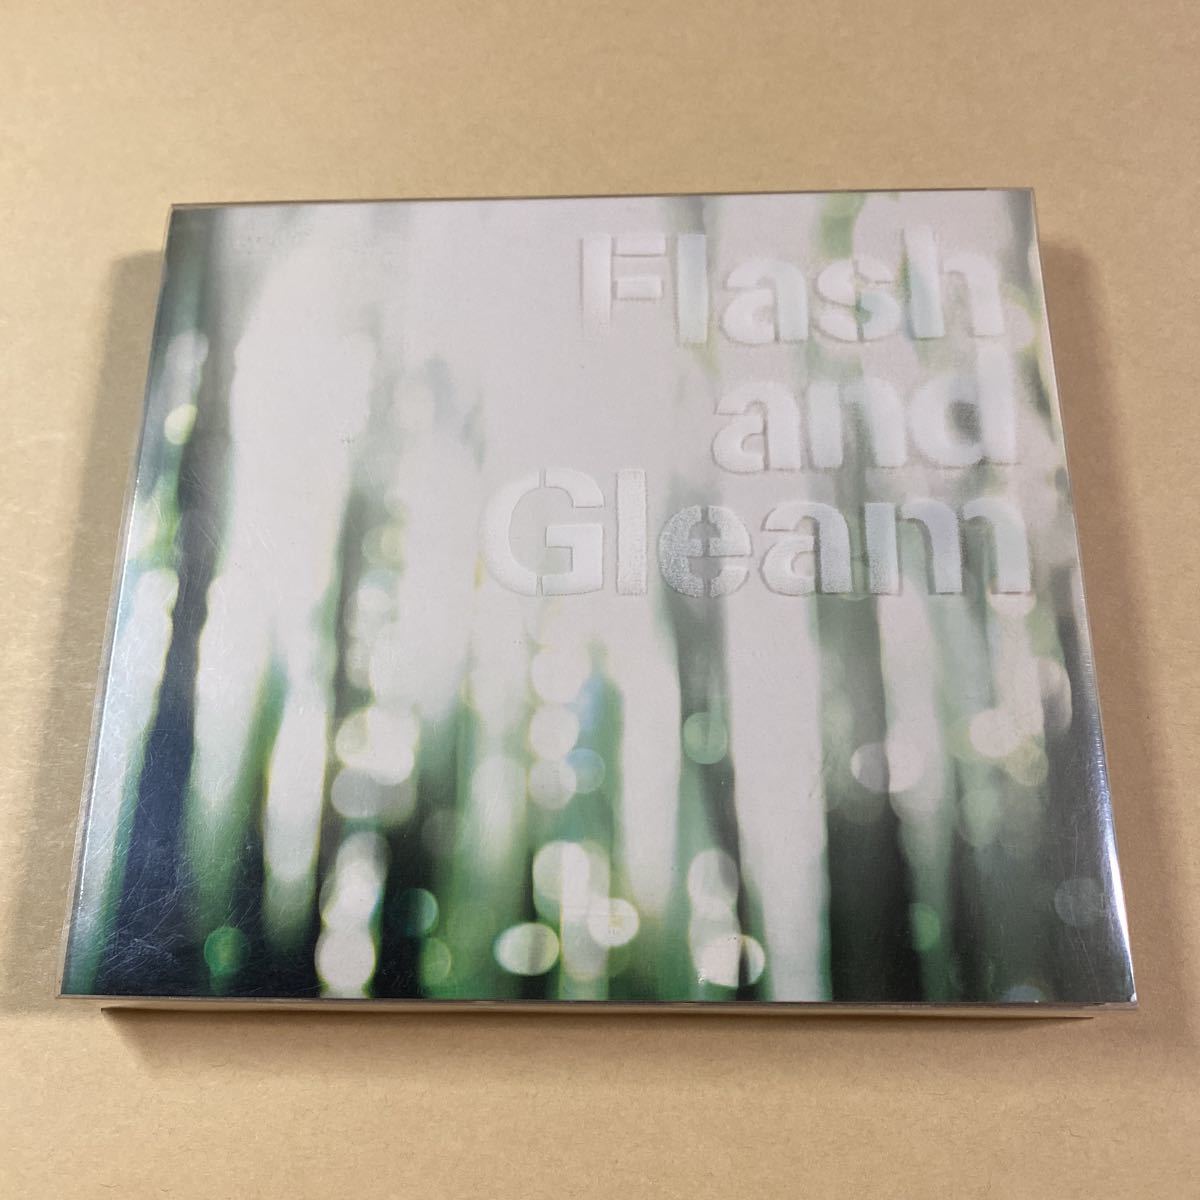 レミオロメンCD+SCD 2枚組「Flash and Gleam」_画像1